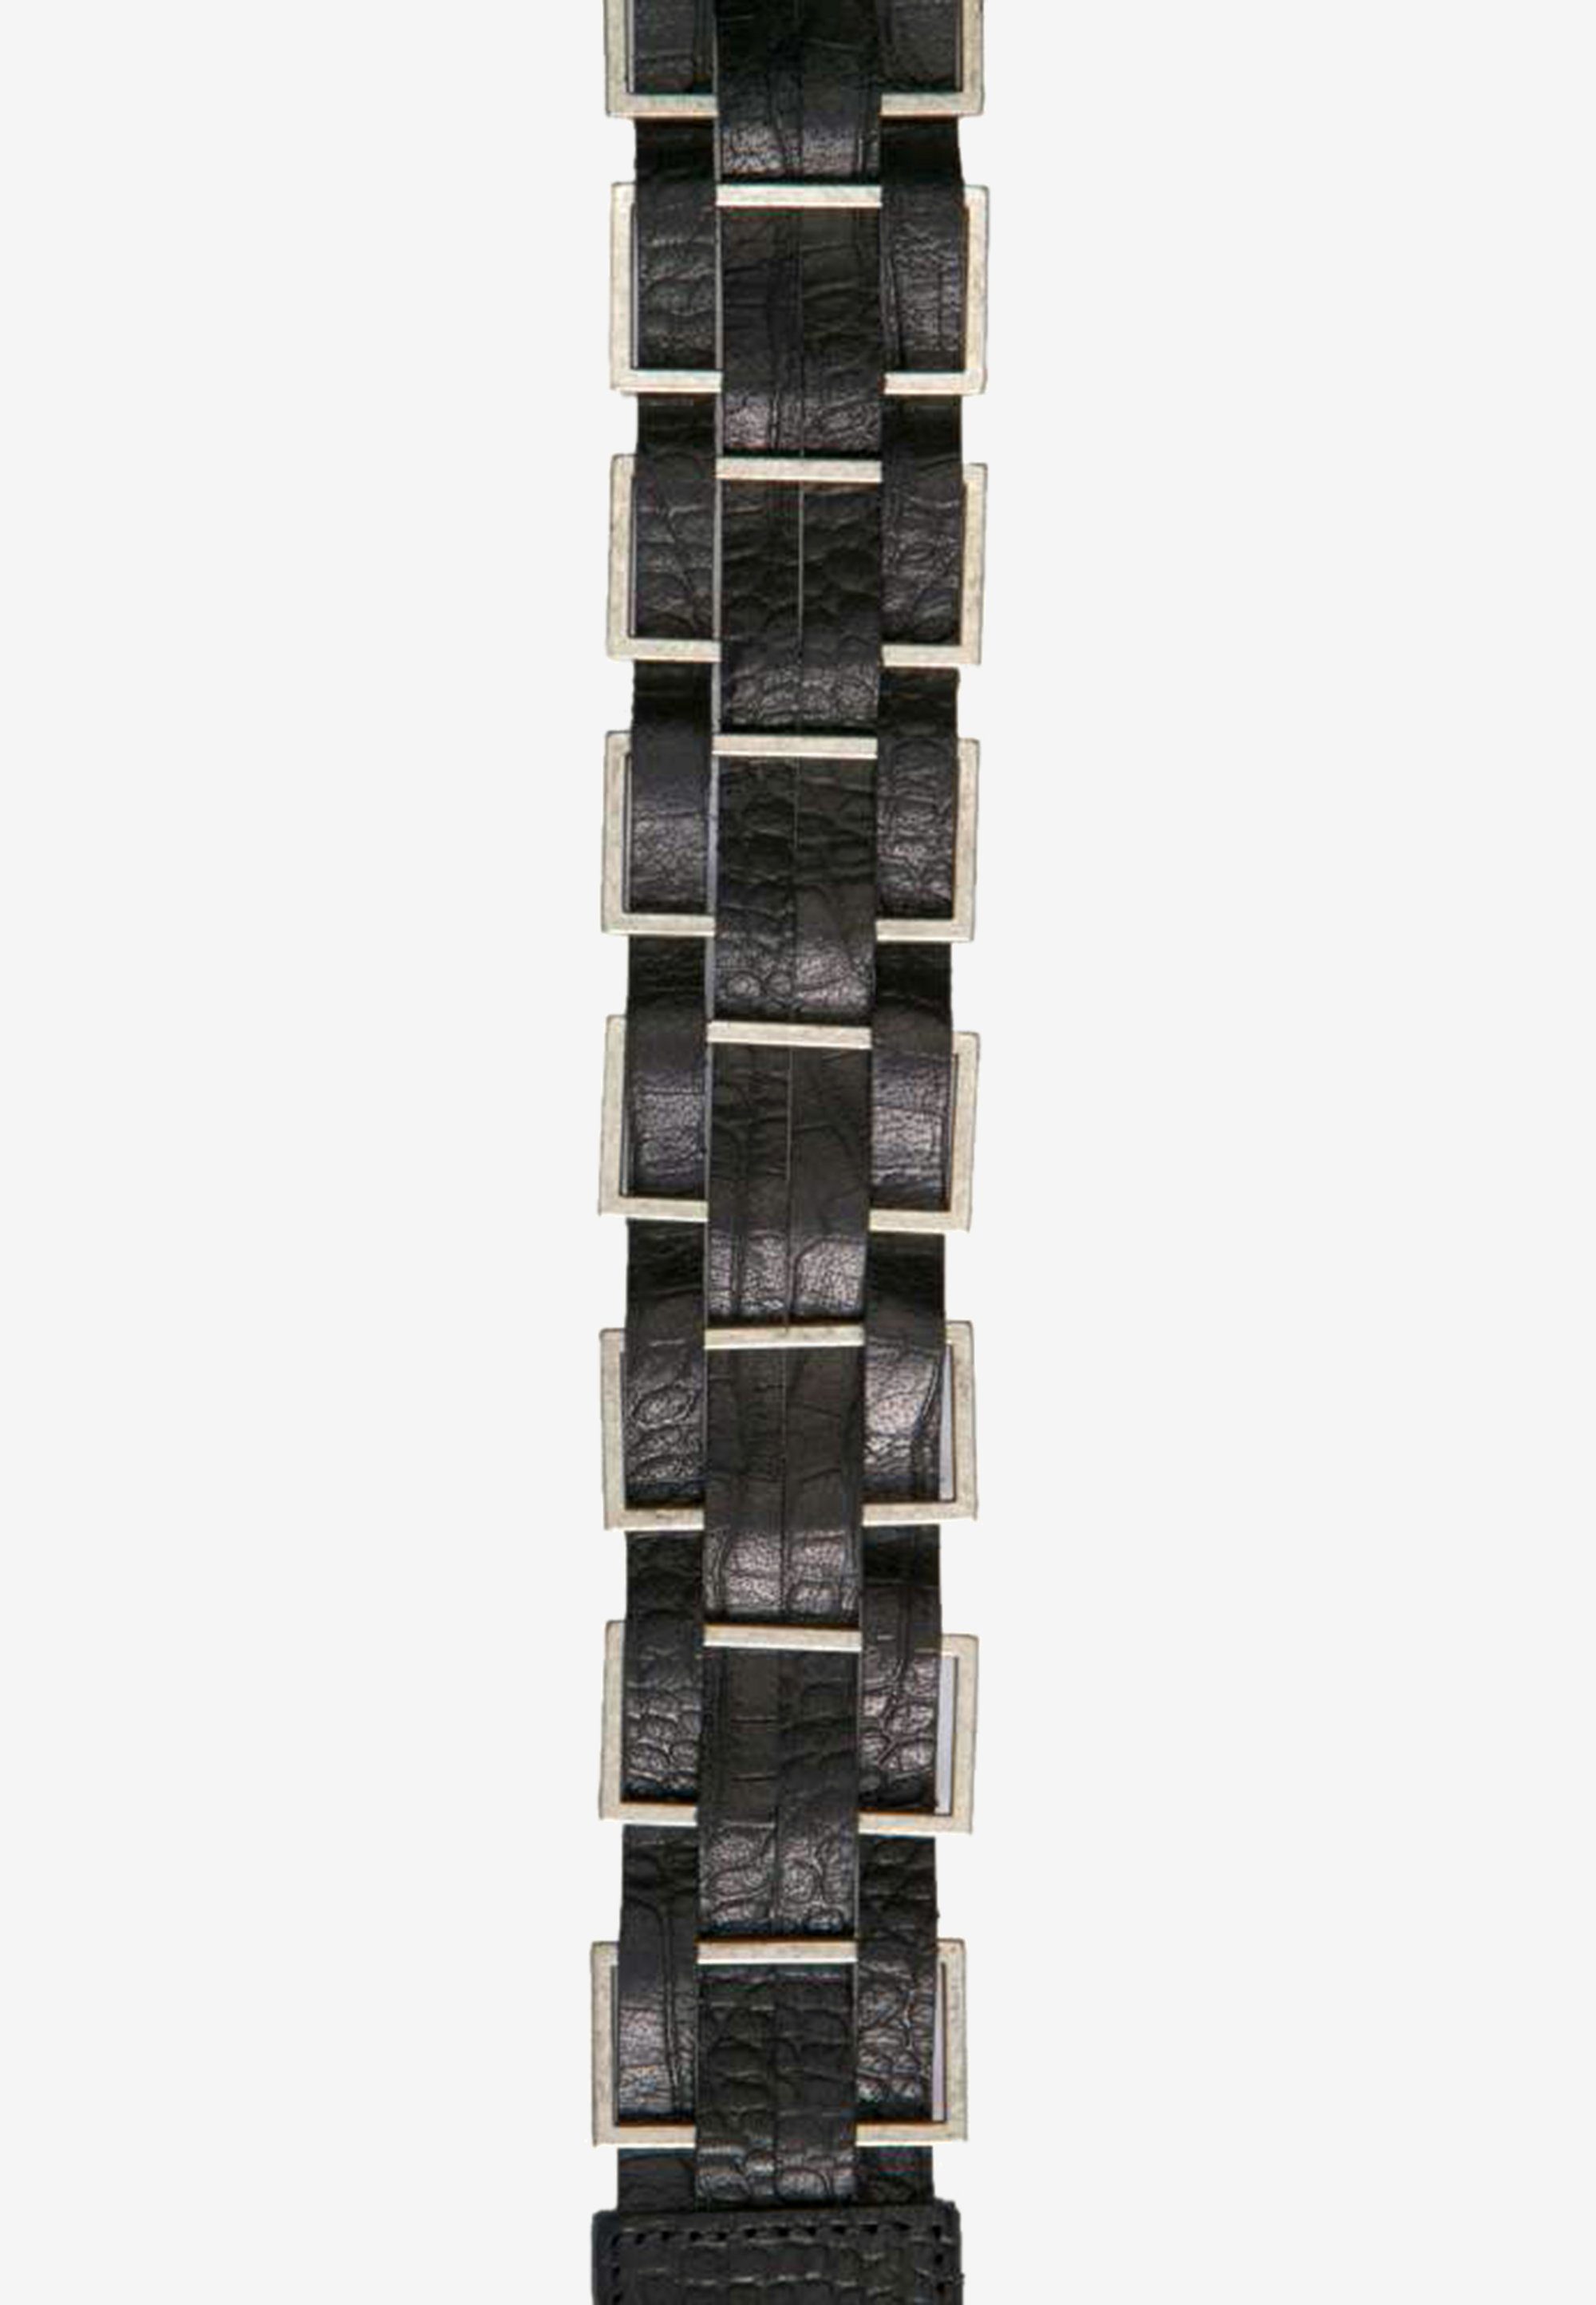 Cipo & modischen Ledergürtel mit Metall-Elementen Baxx schwarz